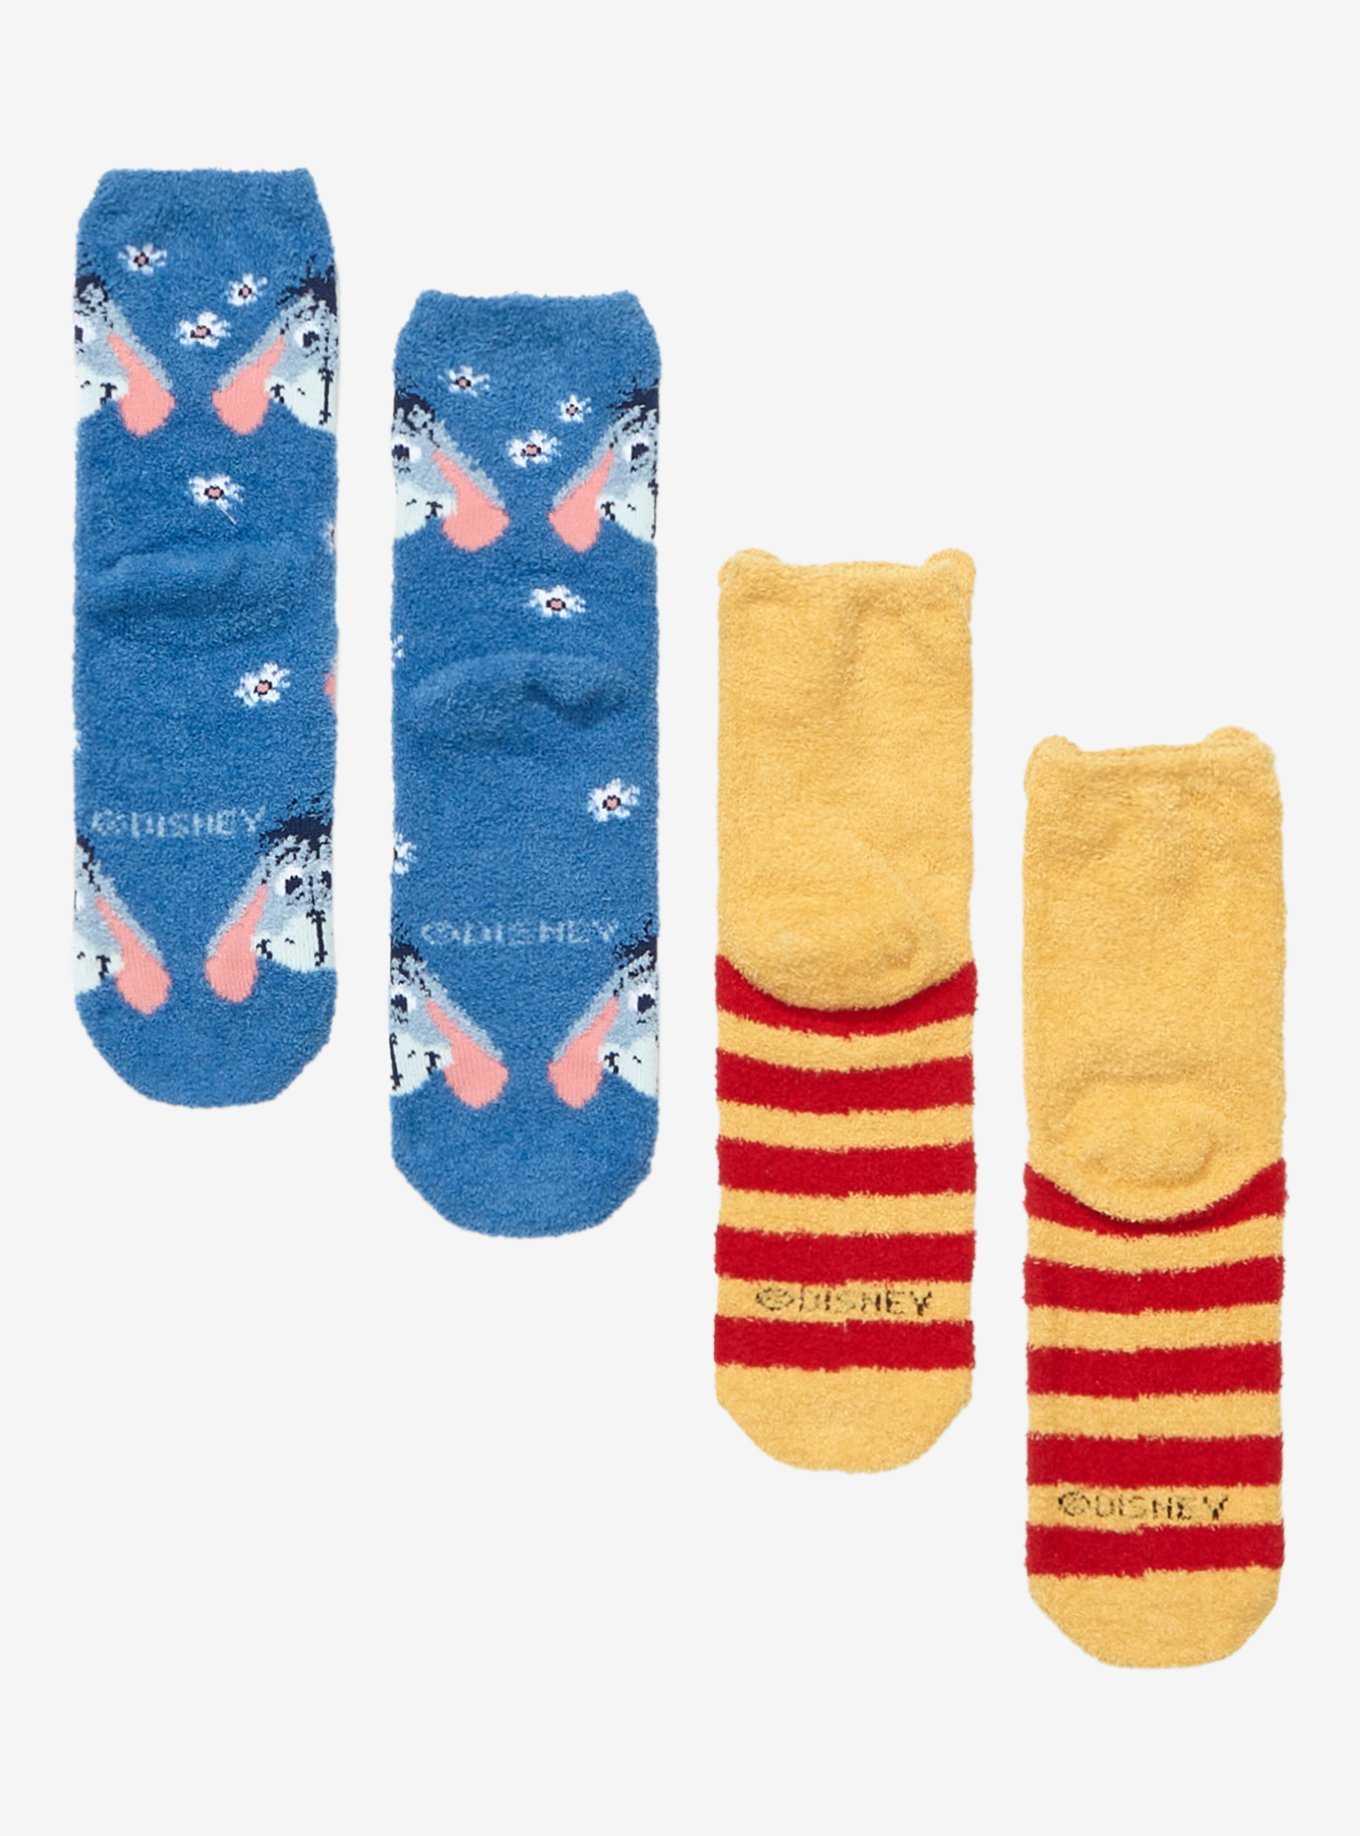 Disney Winnie The Pooh Eeyore & Pooh Fuzzy Socks 2 Pair, , hi-res